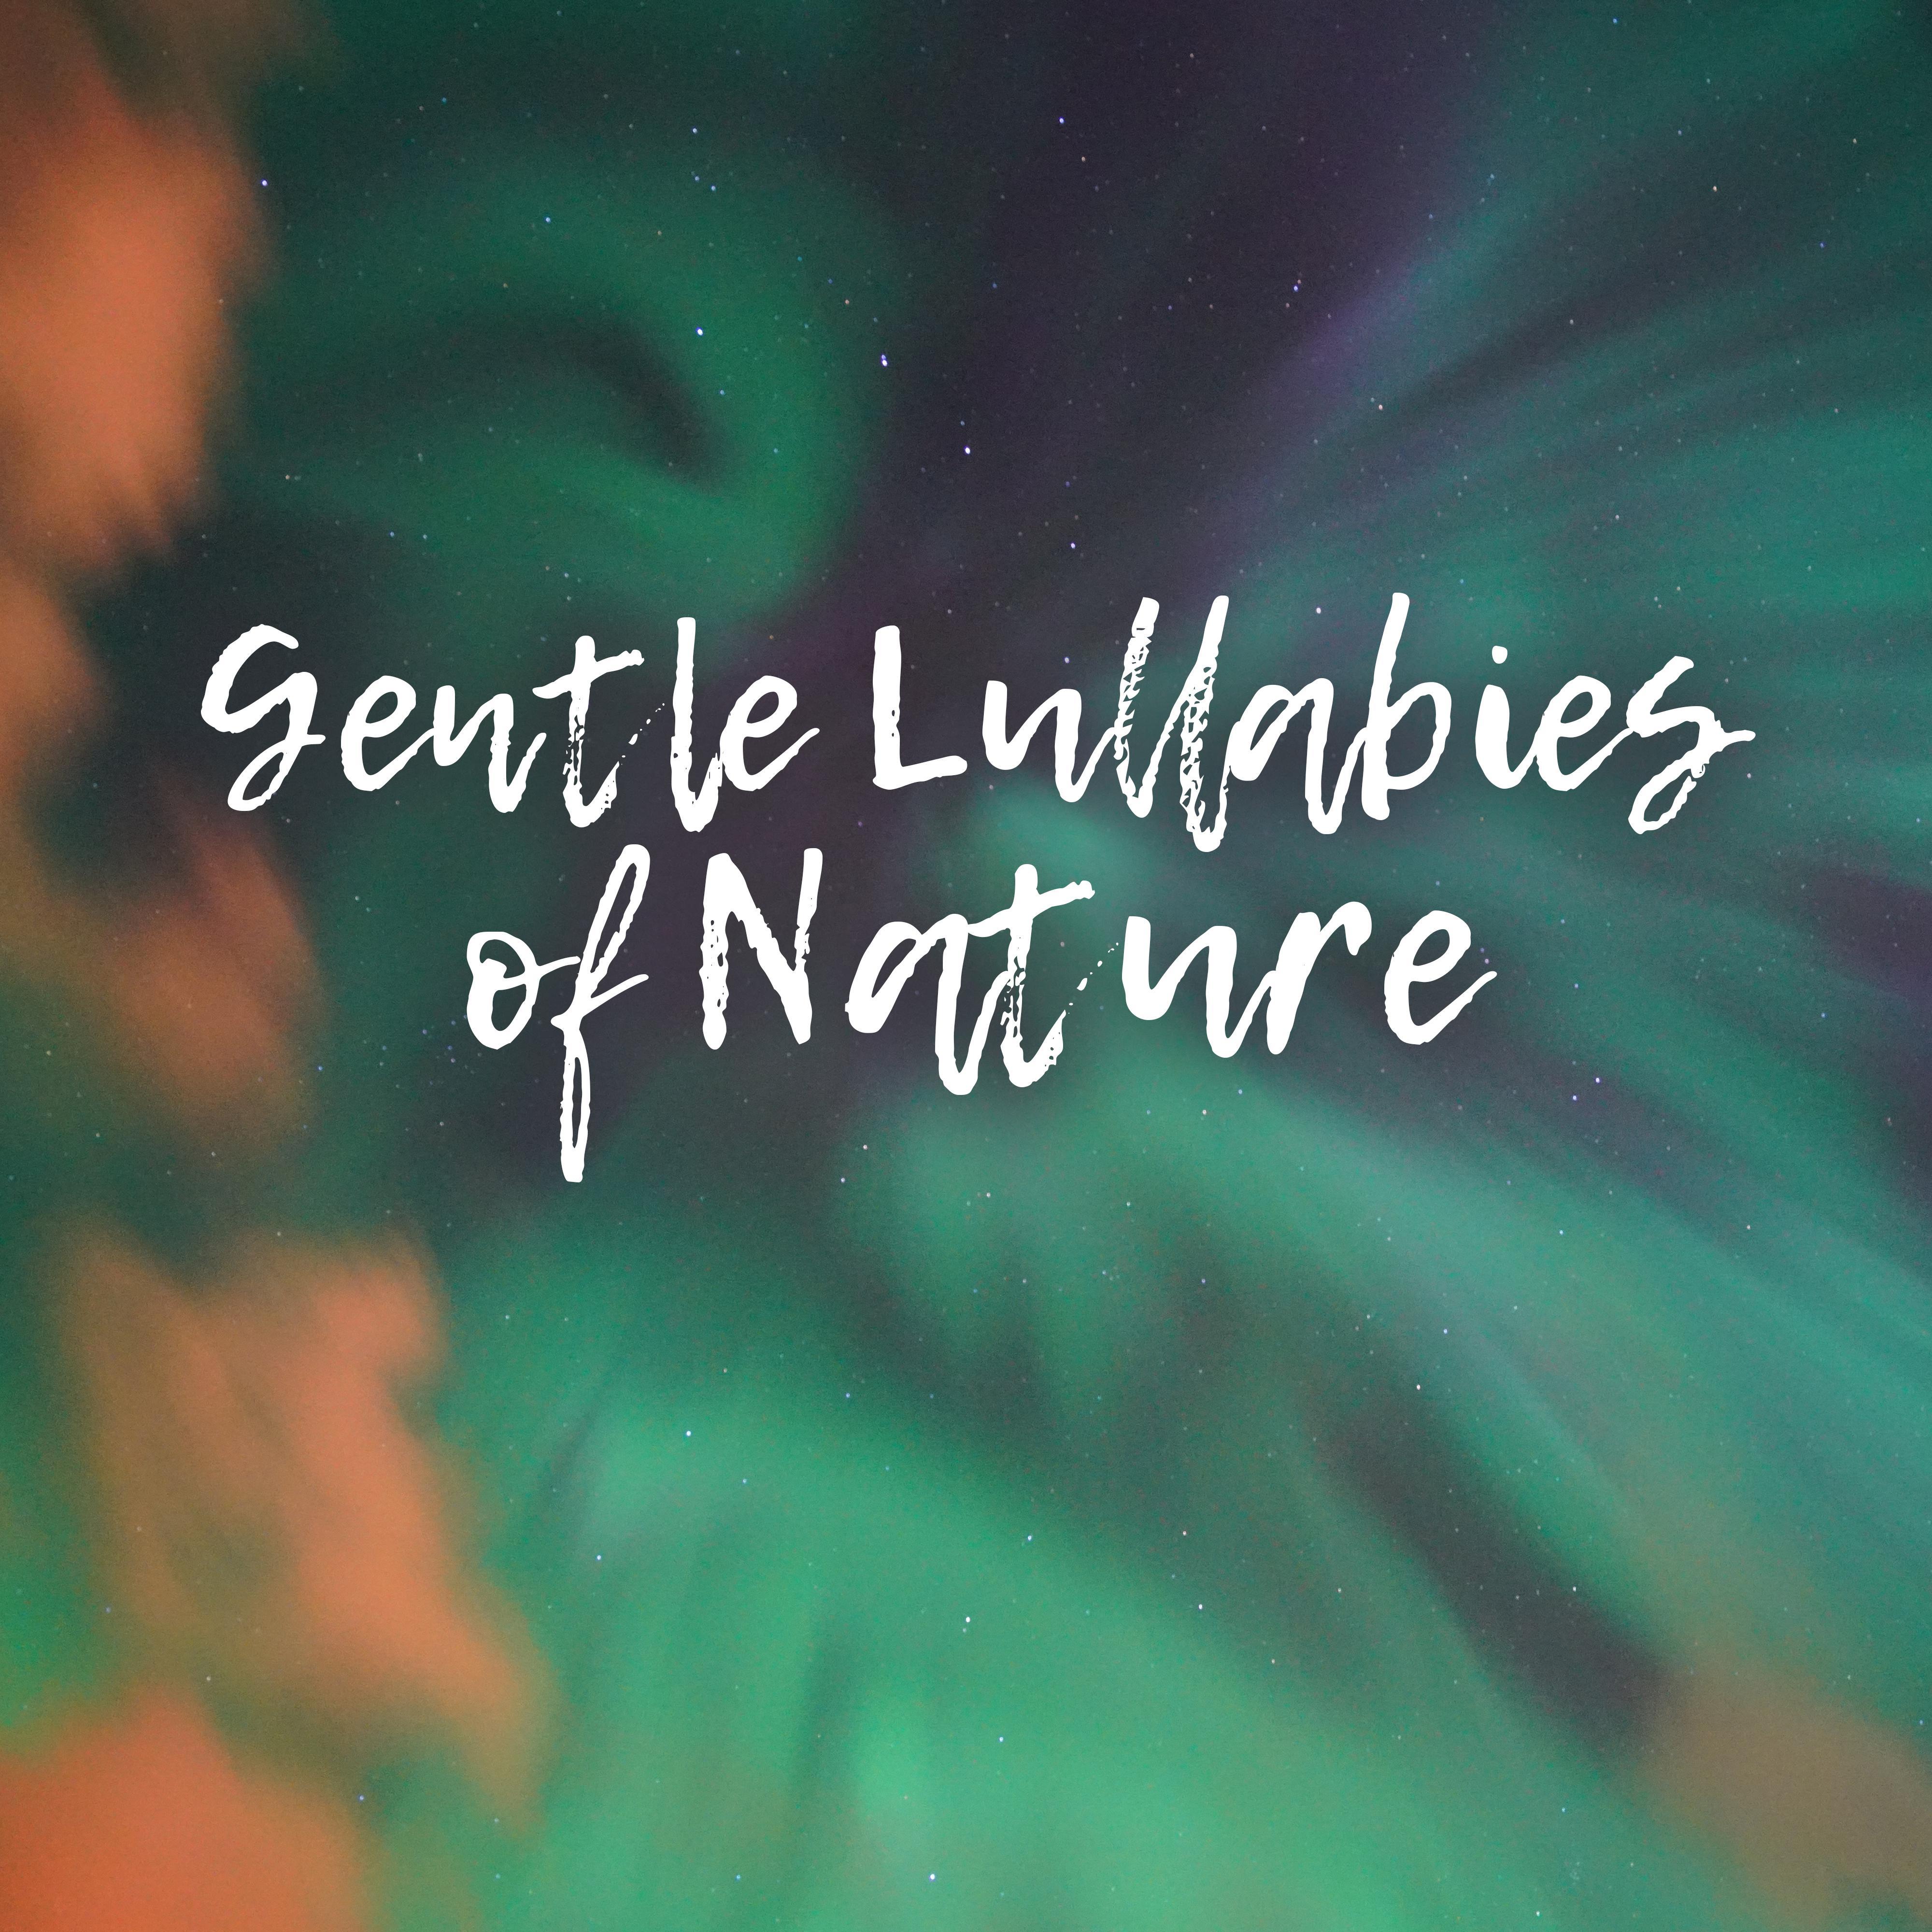 Gentle Lullabies of Nature